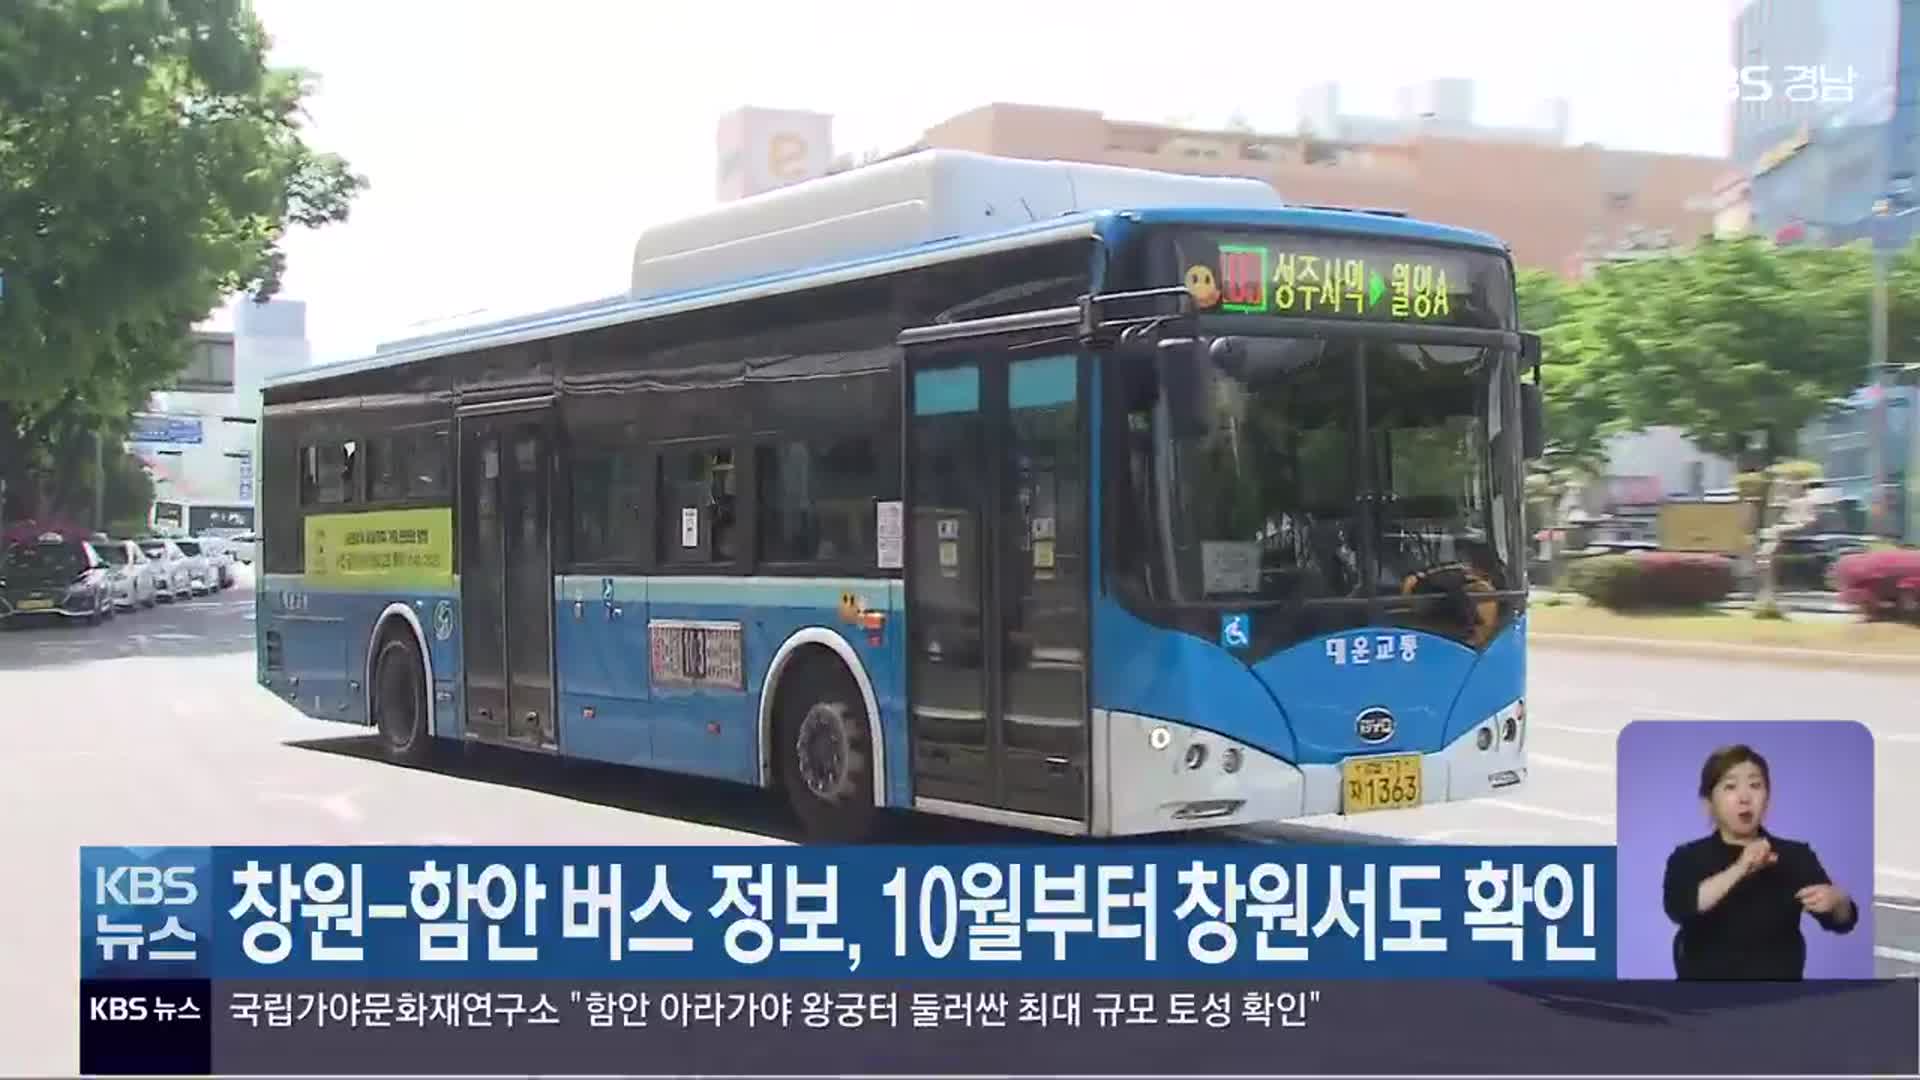 창원-함안 버스 정보, 10월부터 창원서도 확인